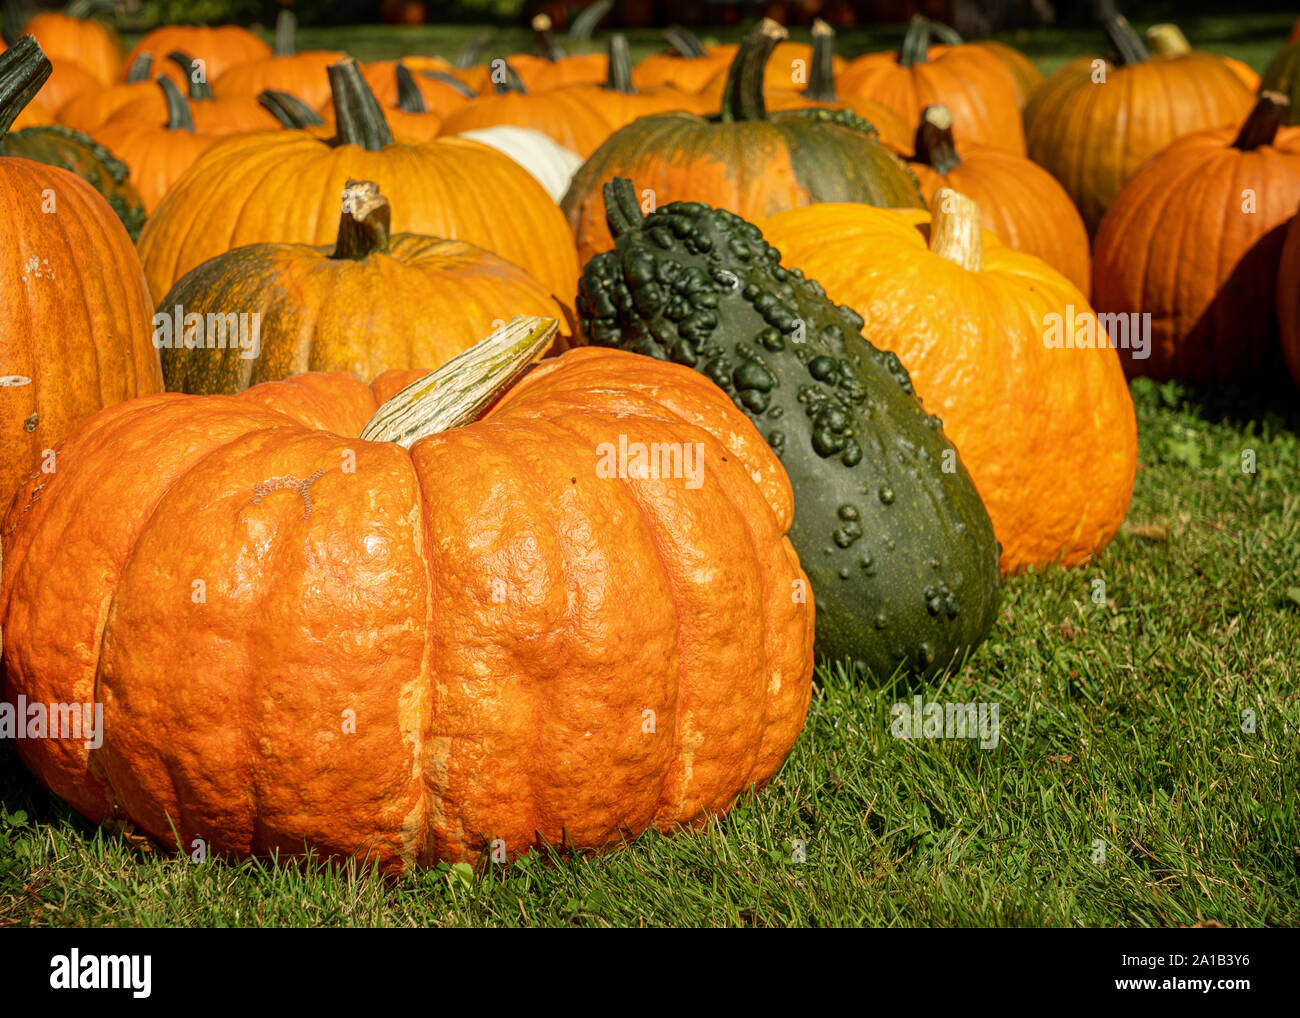 An abundance of pumpkins and gourds. Stock Photo